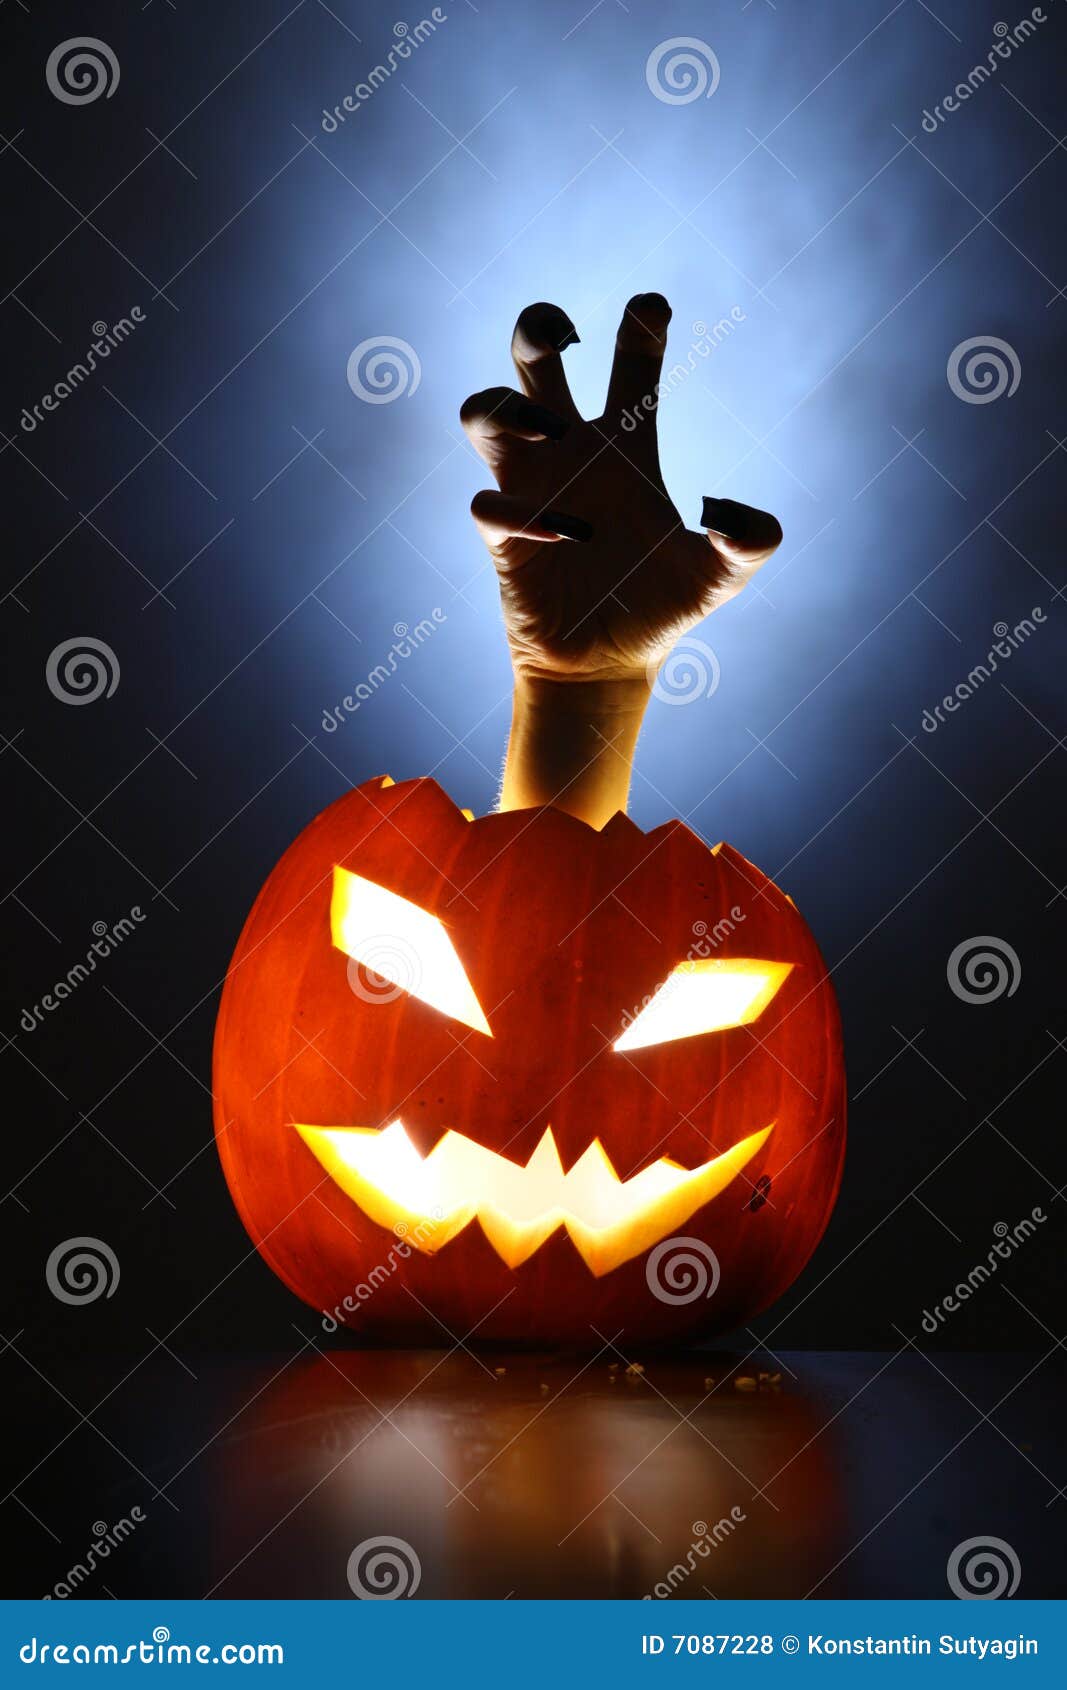 horror pumpkin